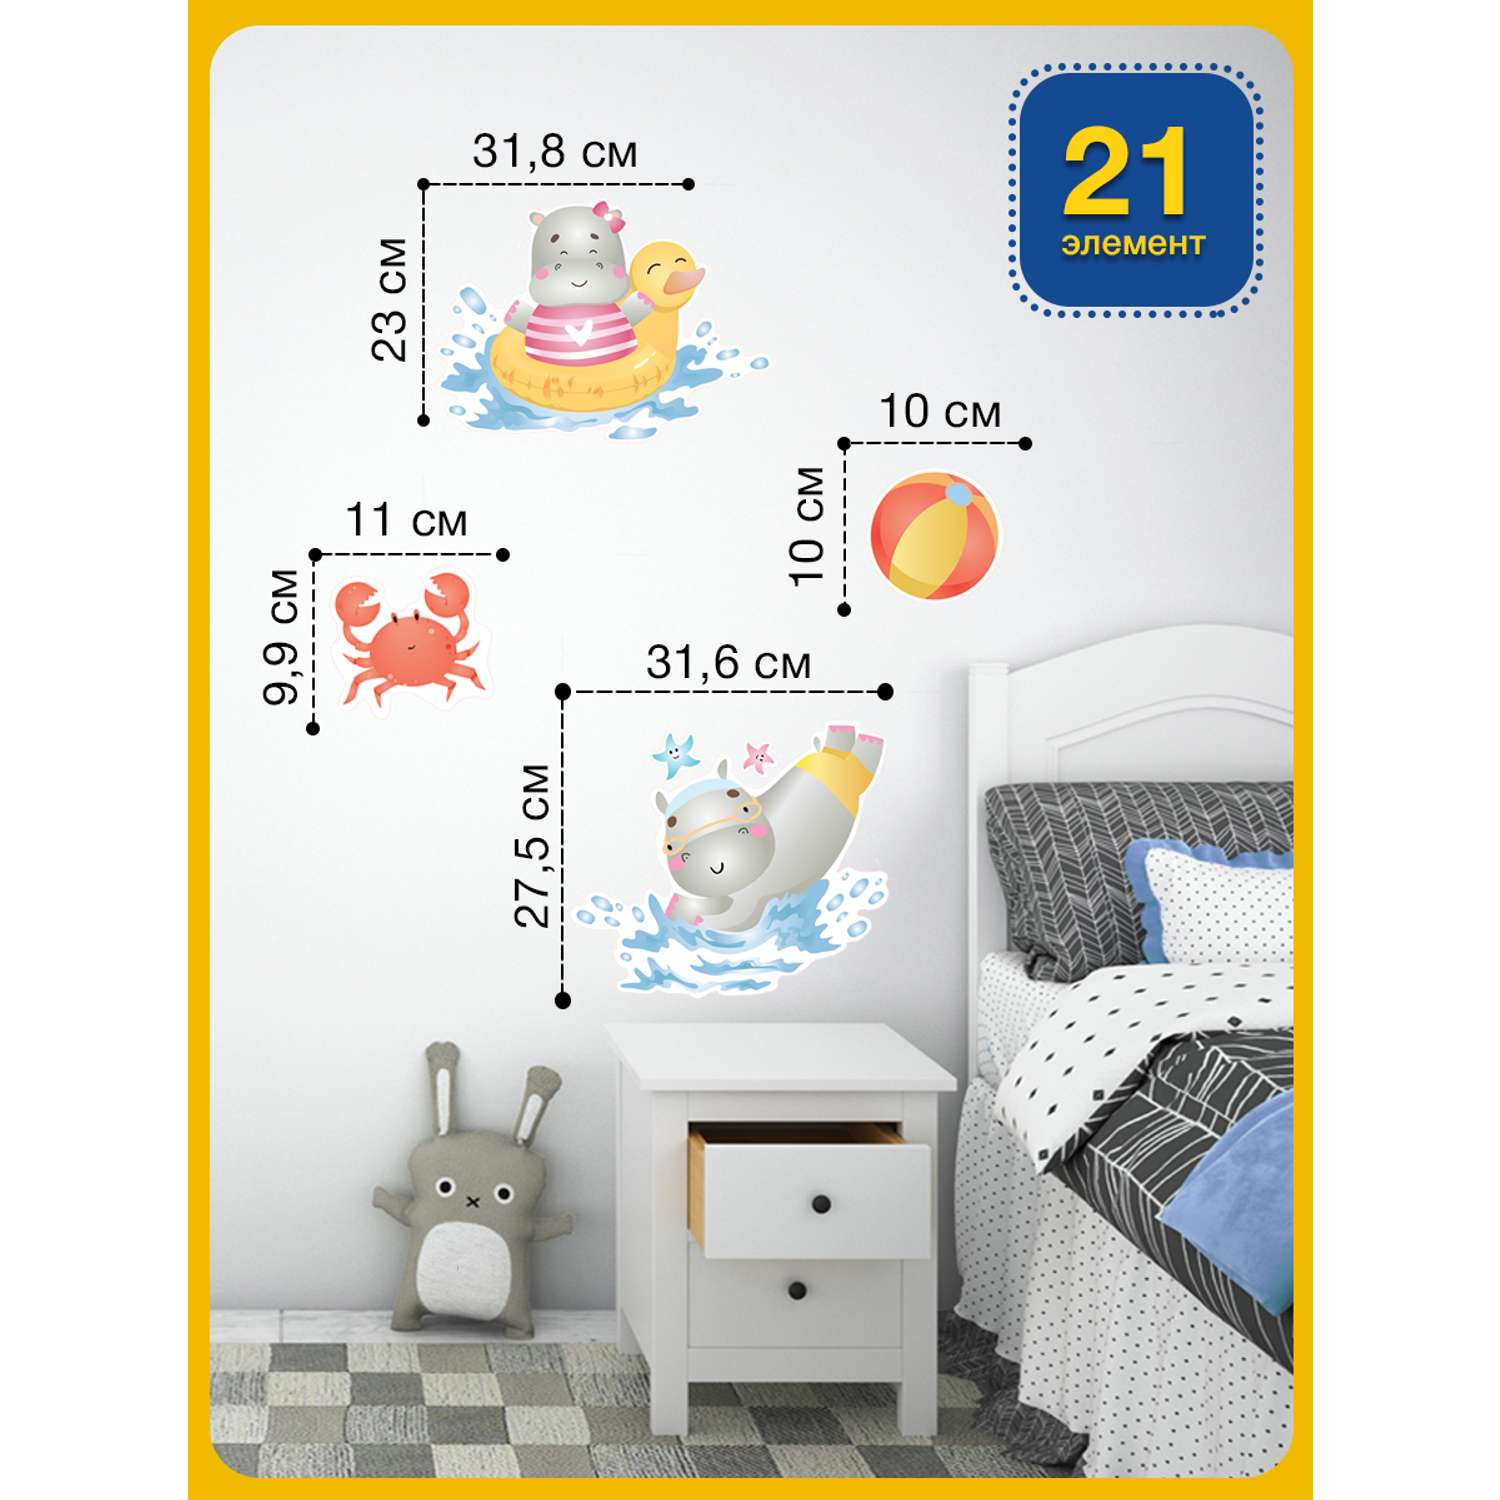 Наклейка оформительская ГК Горчаков ребенку в ванную комнату с рисунком бегемотики для декора - фото 3